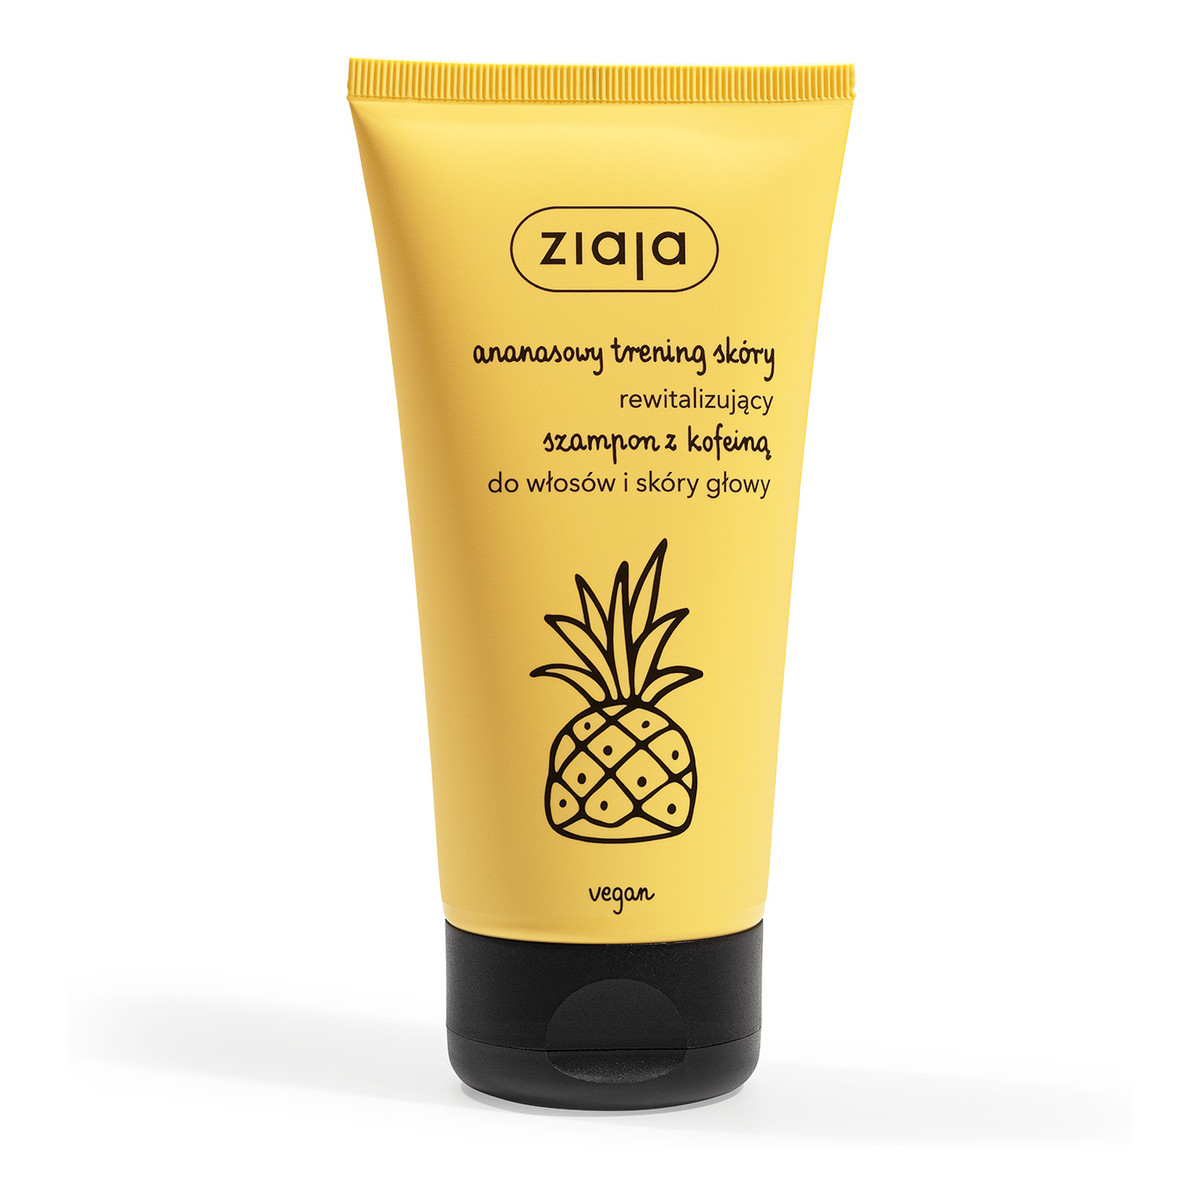 Ziaja Anansowy Trening Ananasowy rewitalizujący szampon z kofeiną 160ml